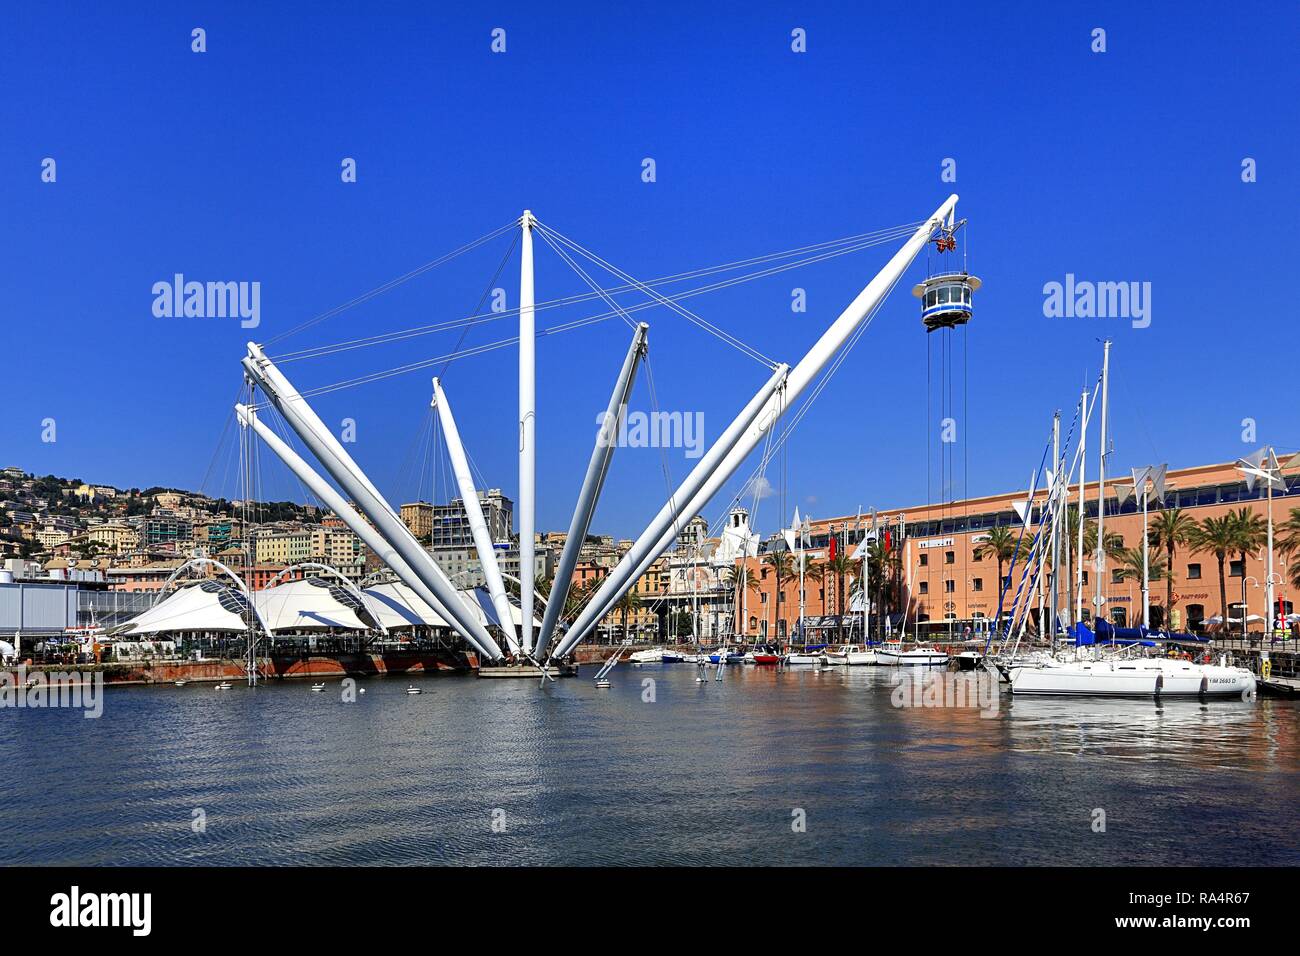 Wlochy - Liguria - Genua - port Genuanski - panorama z widokiem na miasto -  kompleks rozrywkowy Akwarium Genuanskie - winda panoramiczna Italy -  Liguria - Genoa - panoramic view on the port and city Stock Photo - Alamy